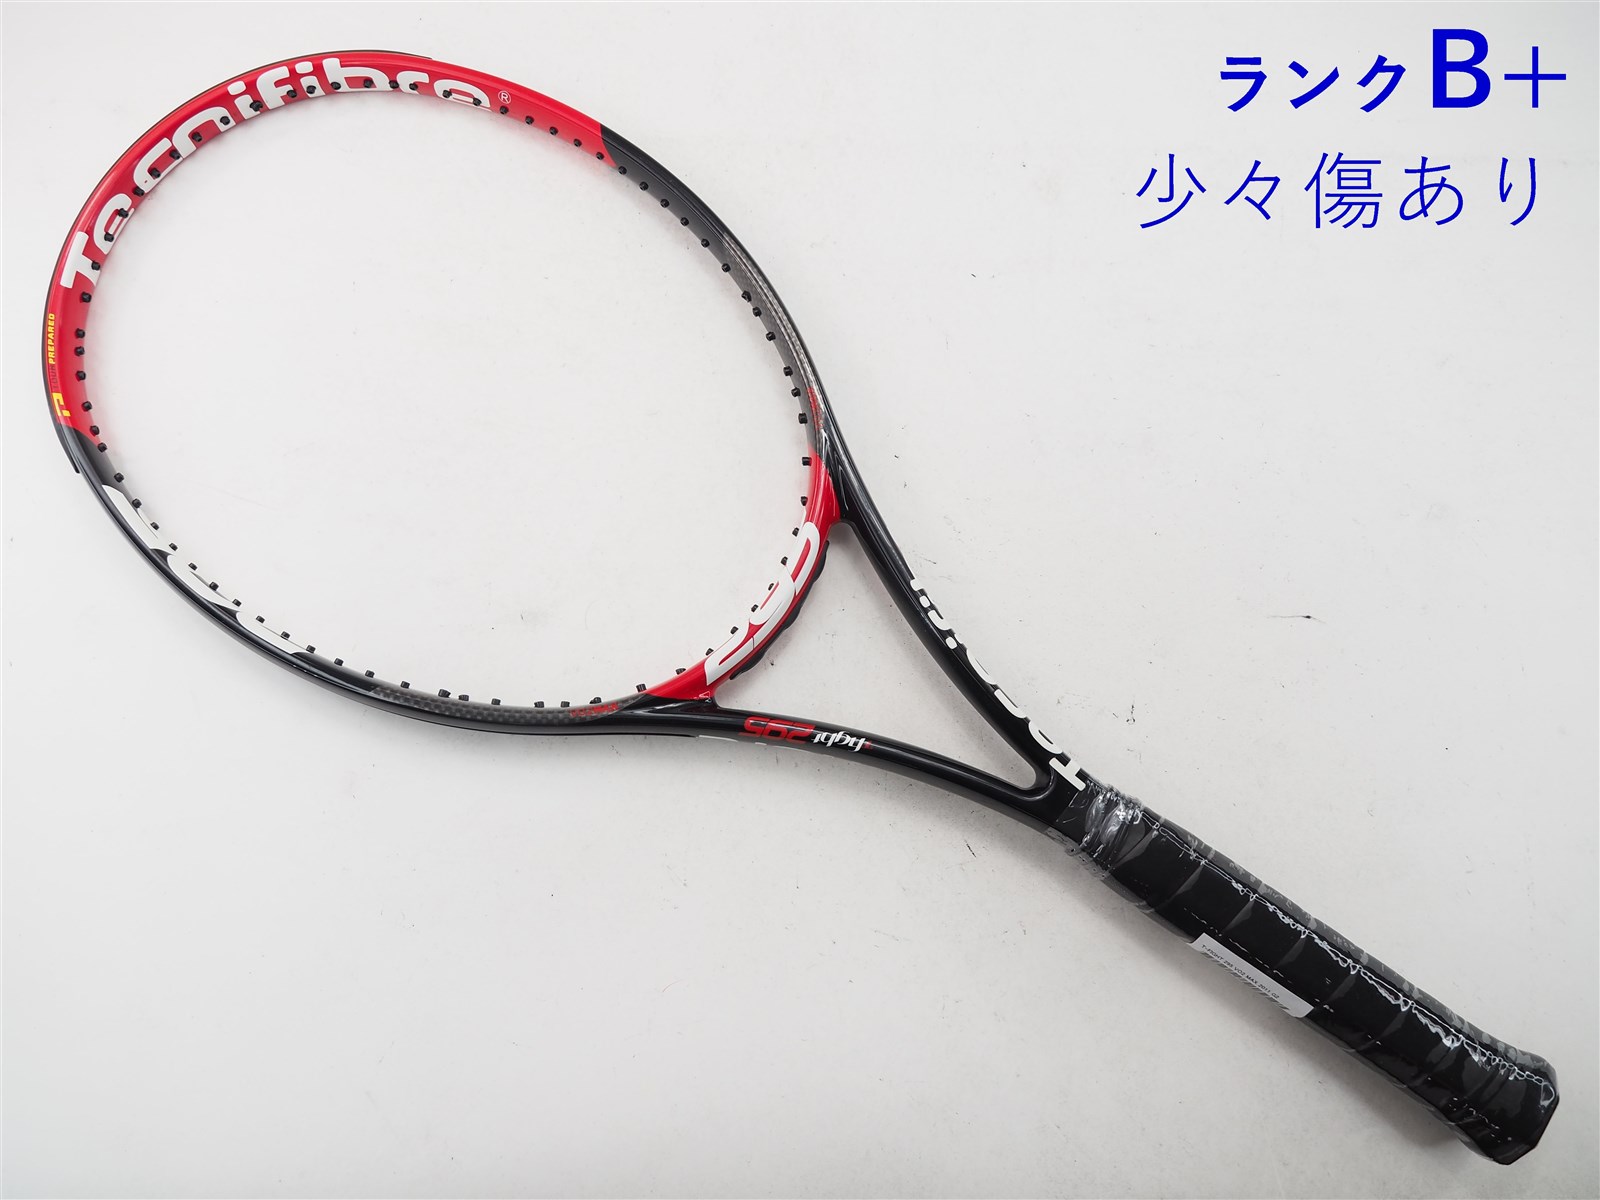 テニスラケット テクニファイバー ティーファイト 295 VO2 マックス